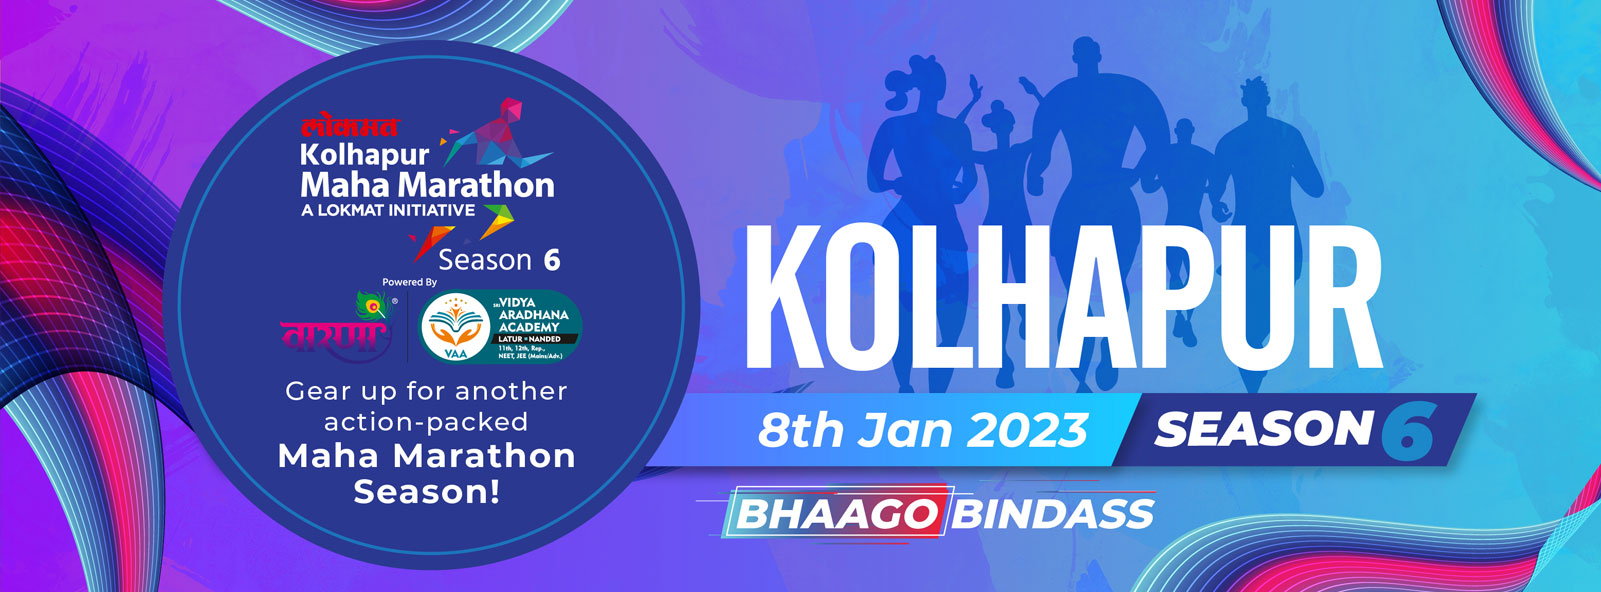 Marathon in Kolhapur